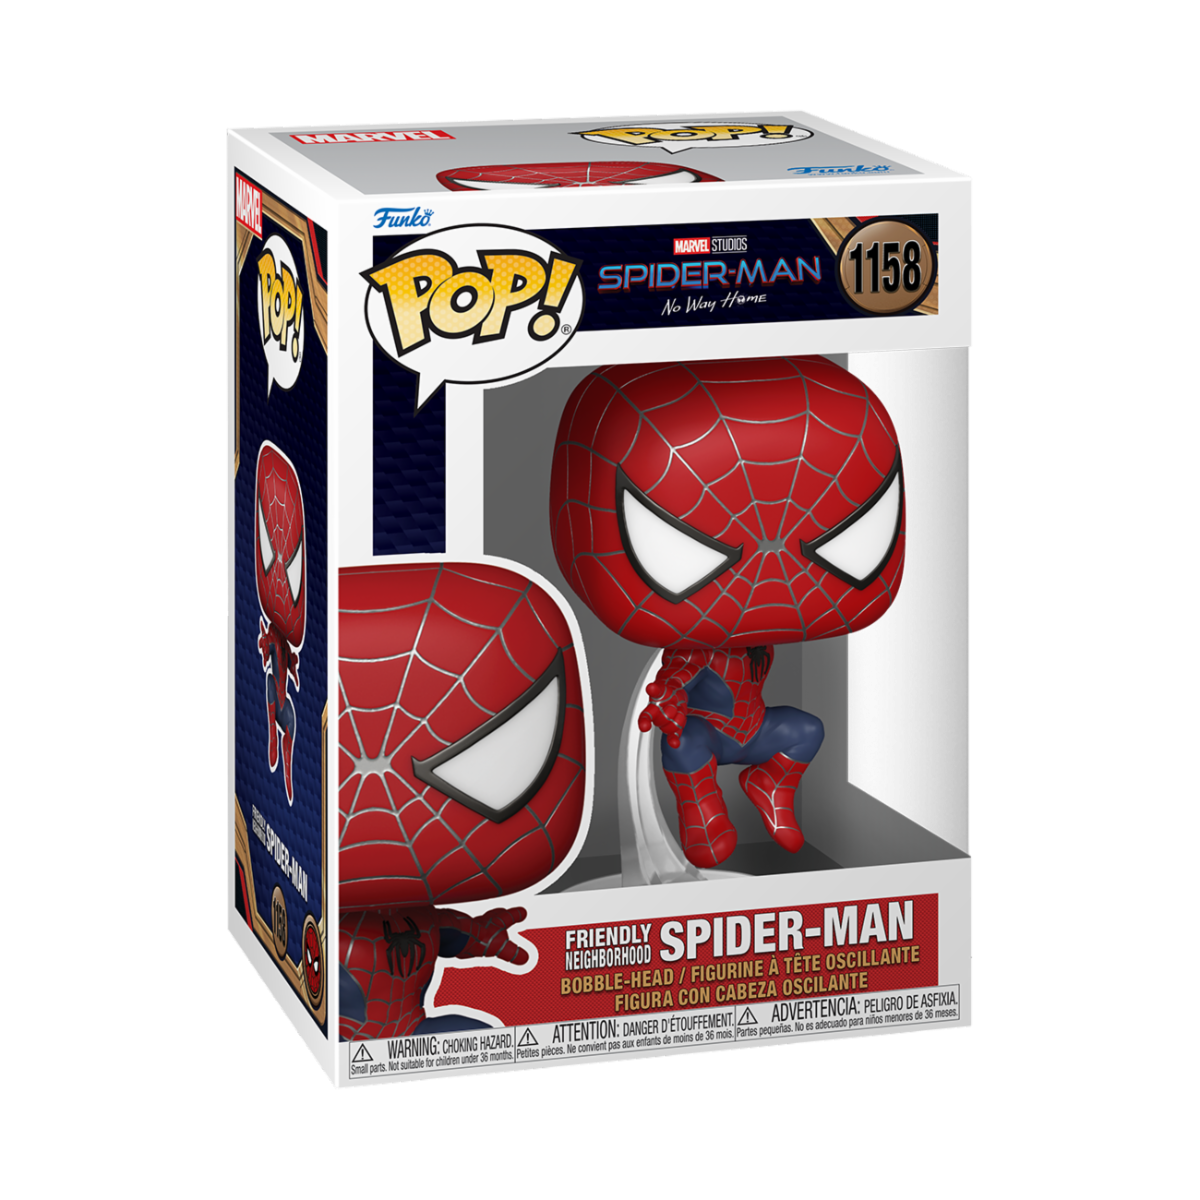 Spider Man No Way Home - Spider Man Friendly (1158)